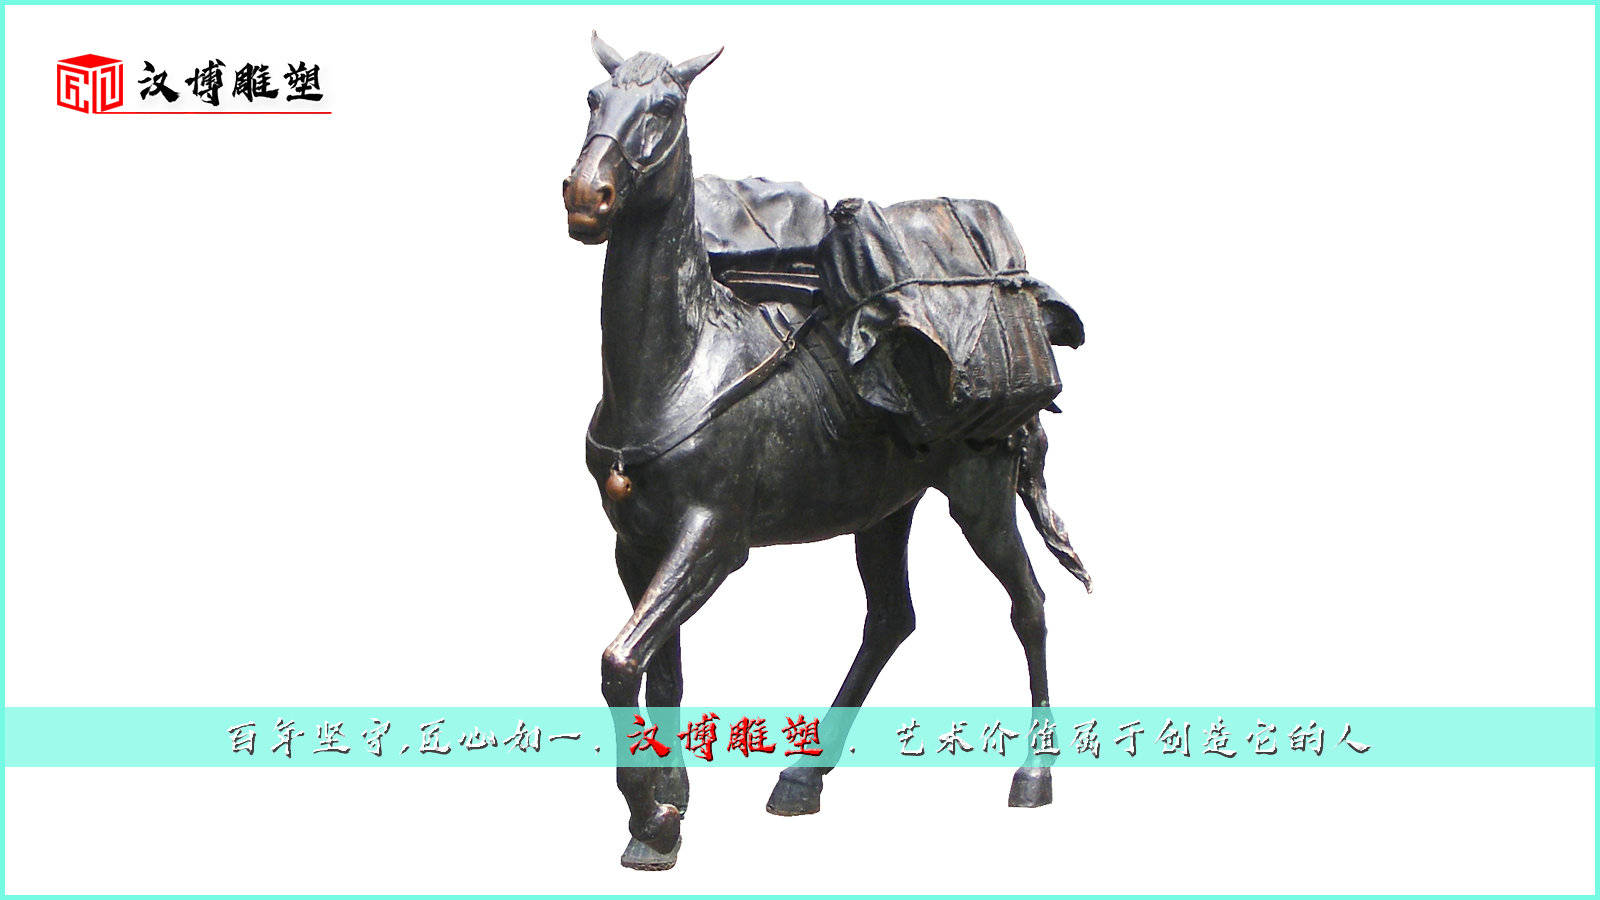 茶马古道文化主题雕塑，延续了马帮几千年的辉煌和沧桑